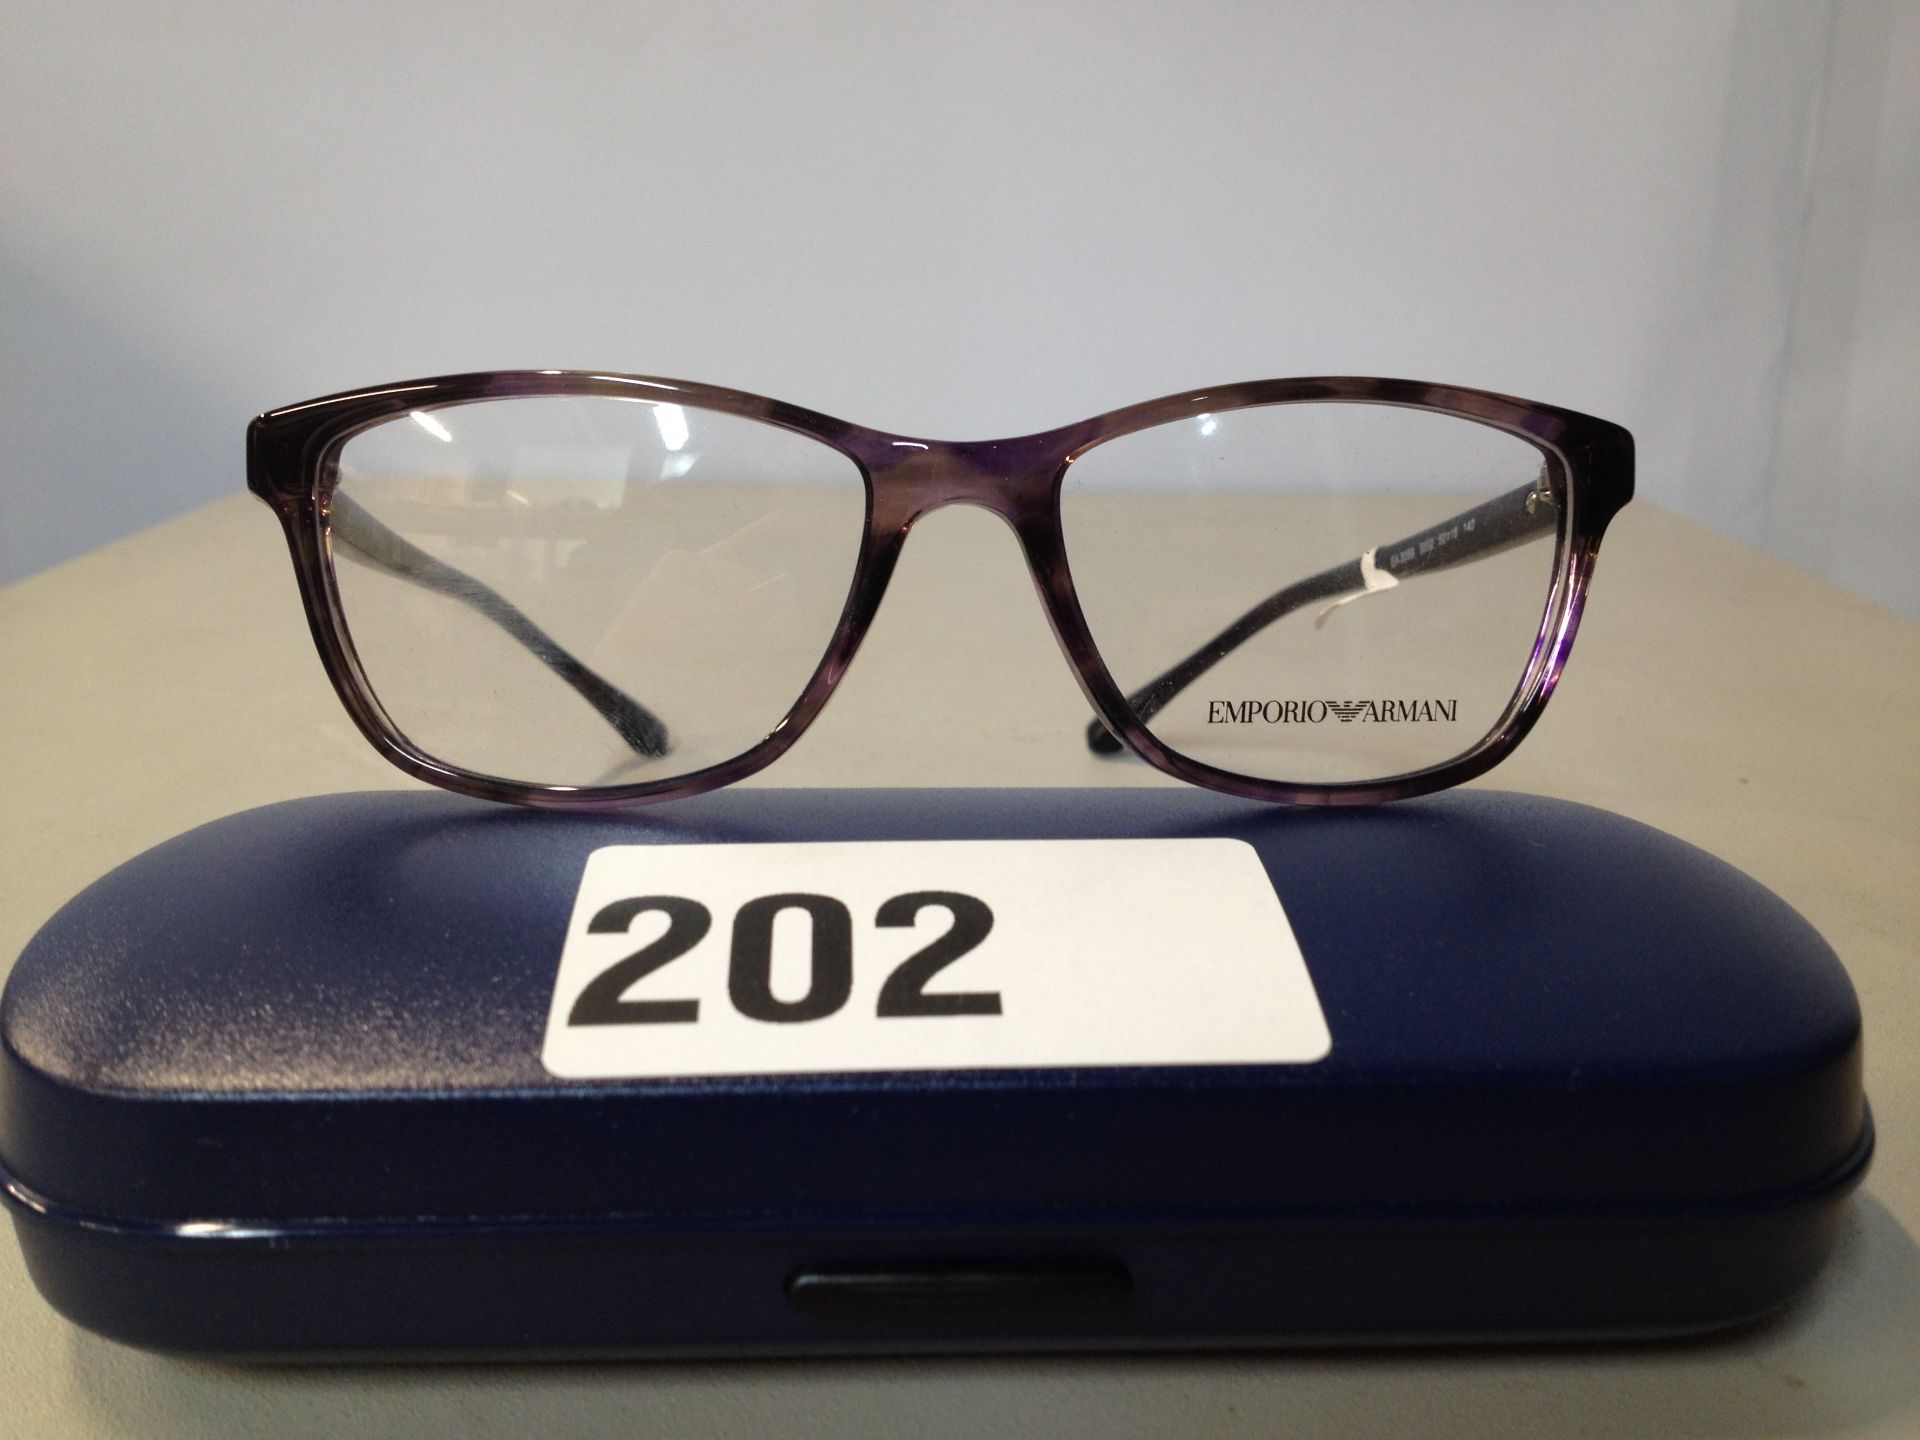 1 x Emperio Armani glasses